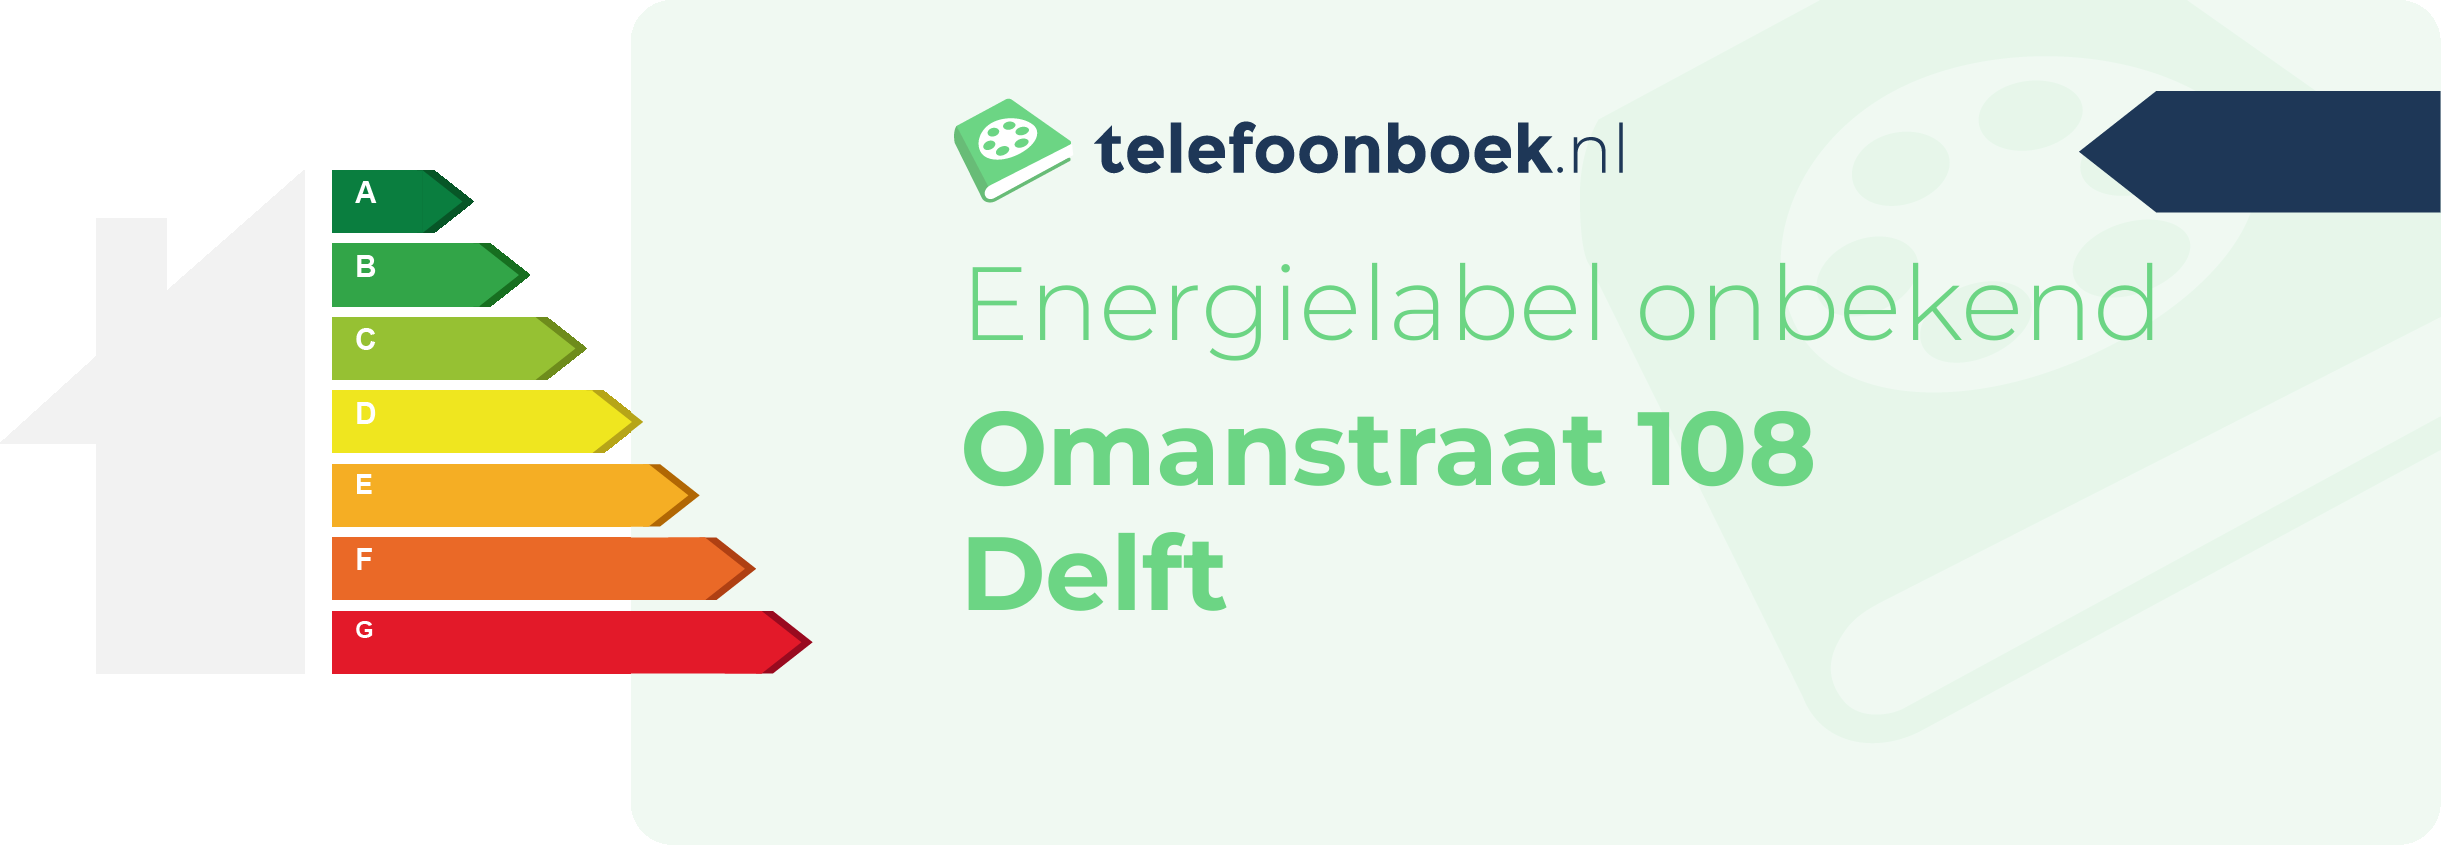 Energielabel Omanstraat 108 Delft